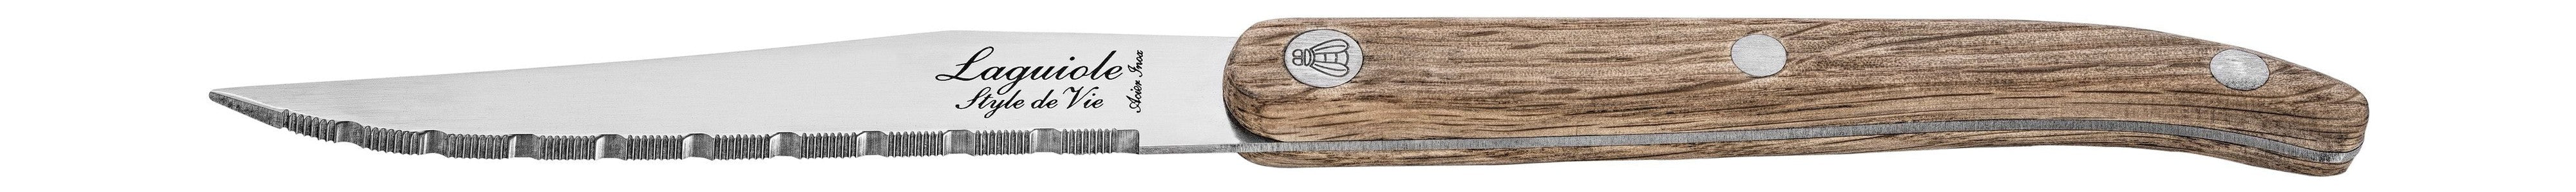 Stil de vie authentique laguiole innovation Line Biff knivar 6 stycken uppsättning ek, räfflat blad